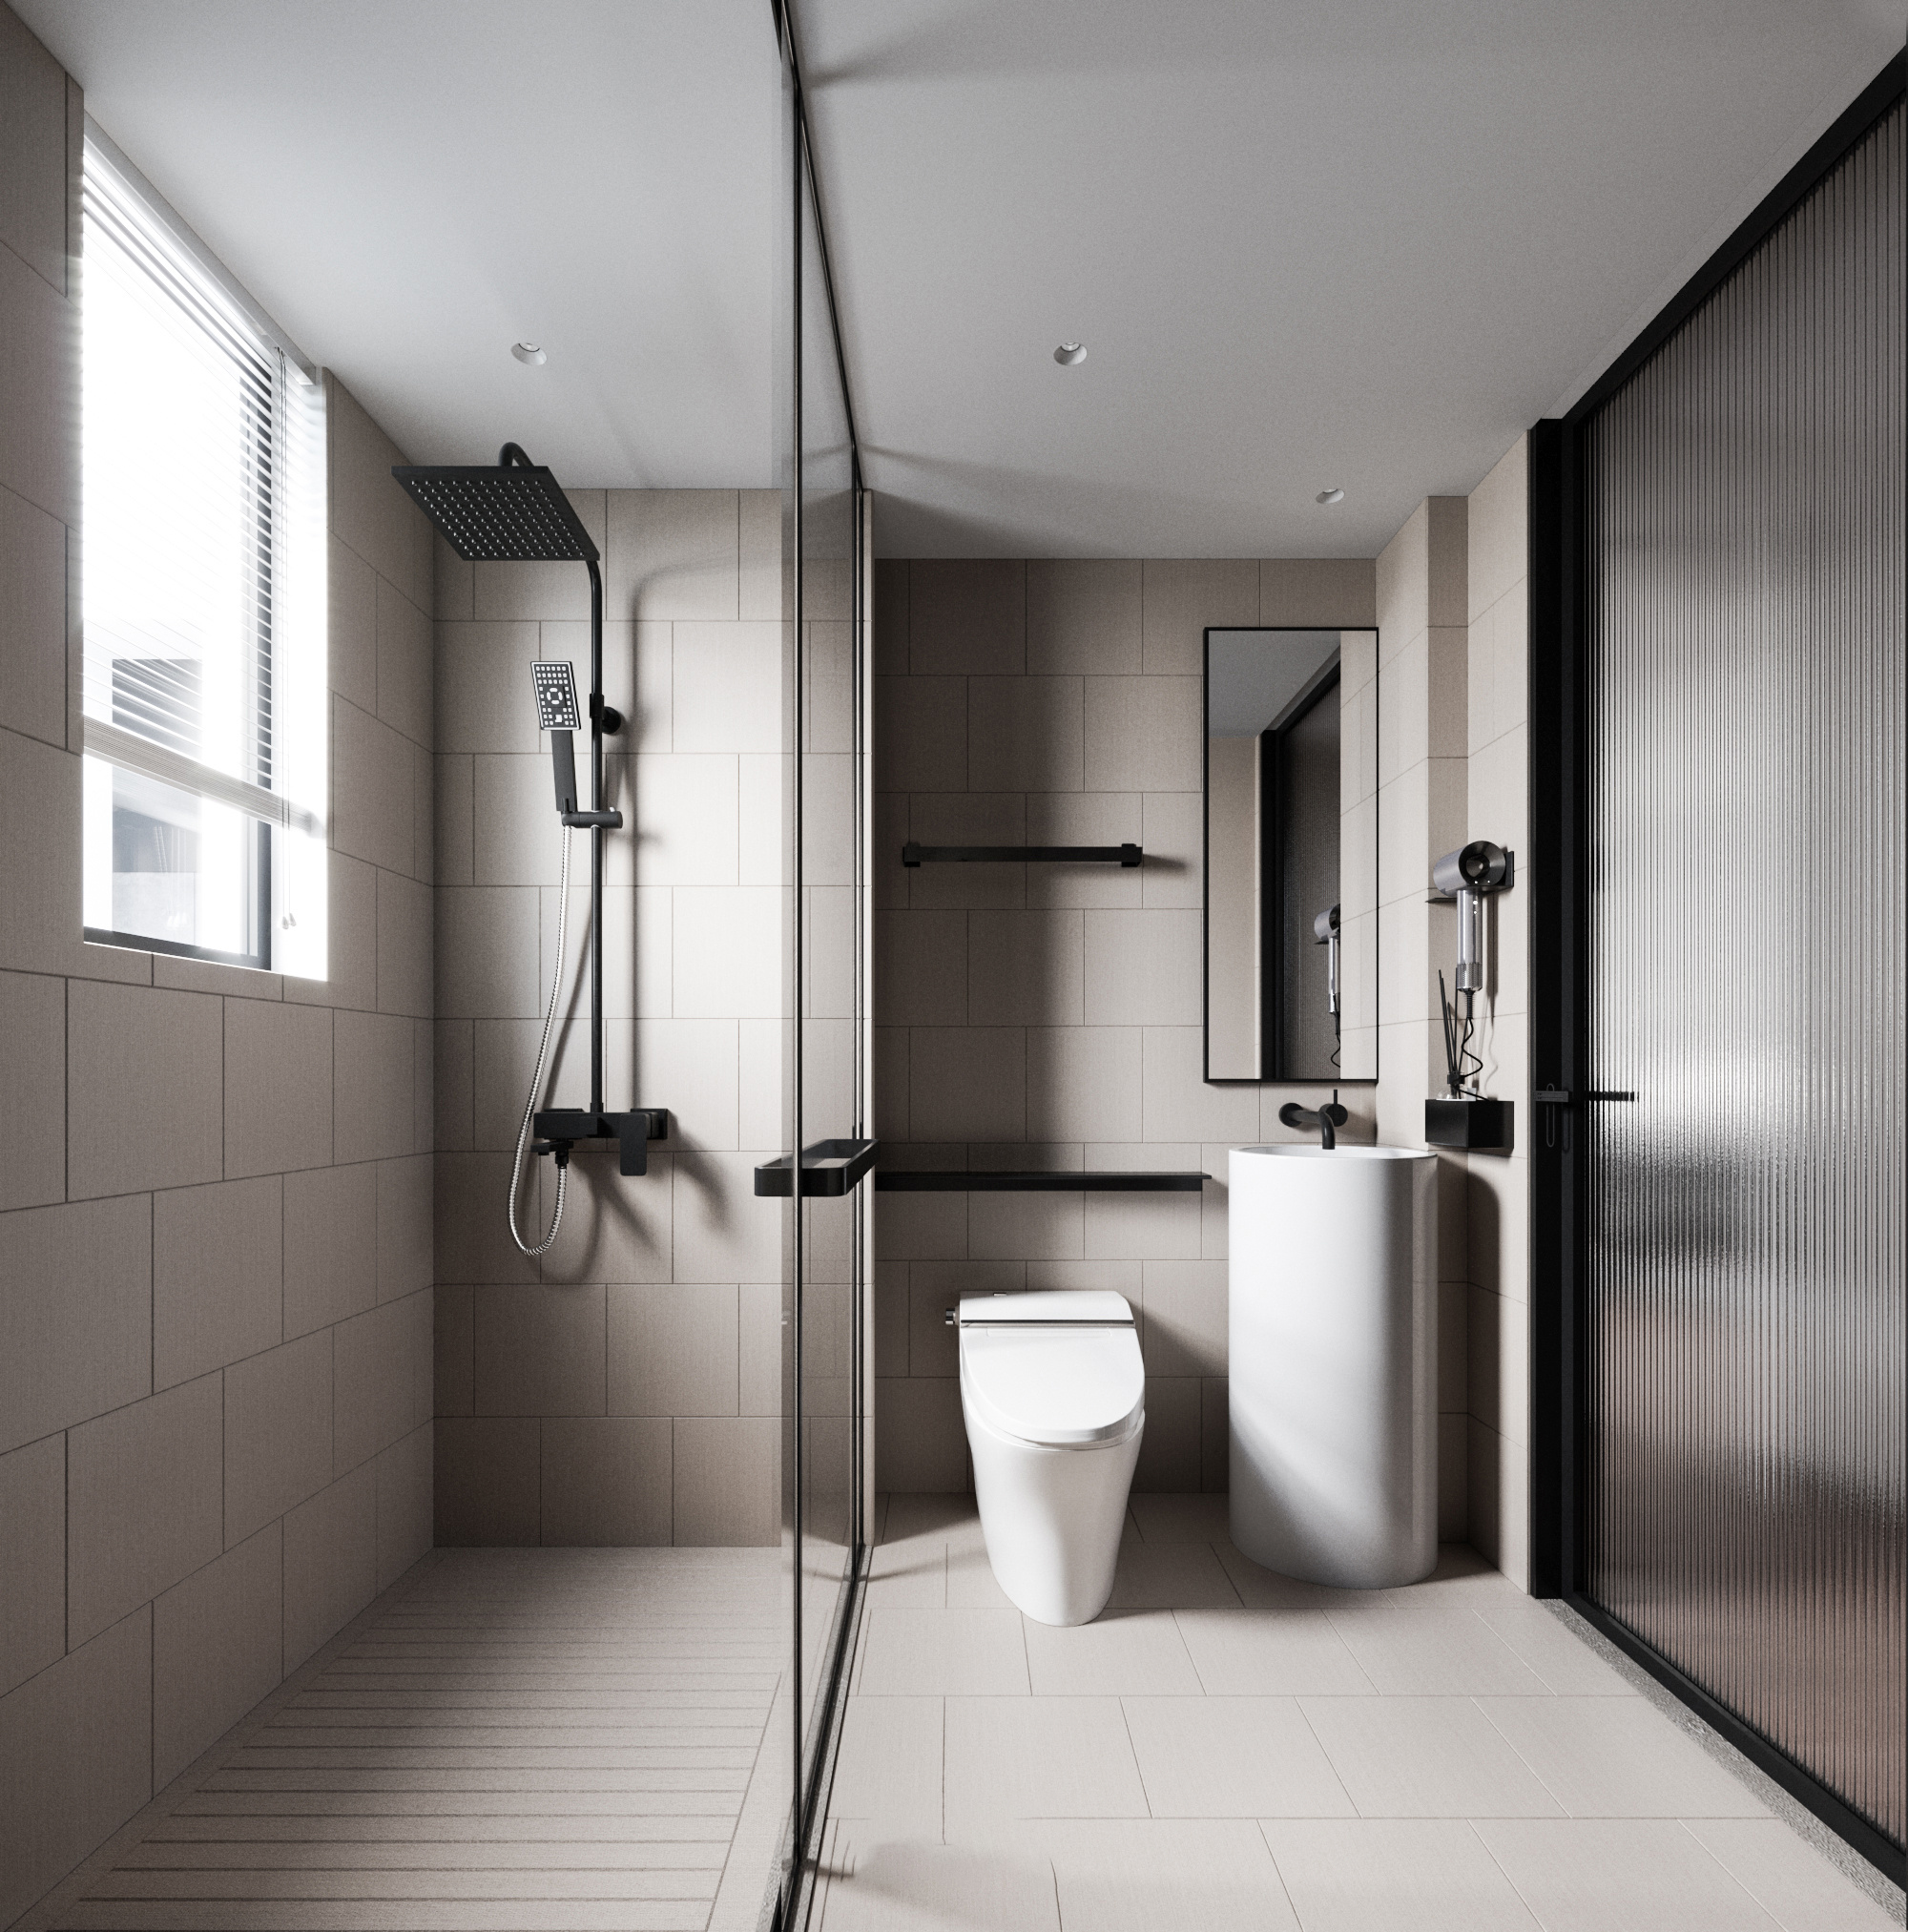 衛浴空間採用乾濕分離的設計，保留部分空間乾燥舒適的空間